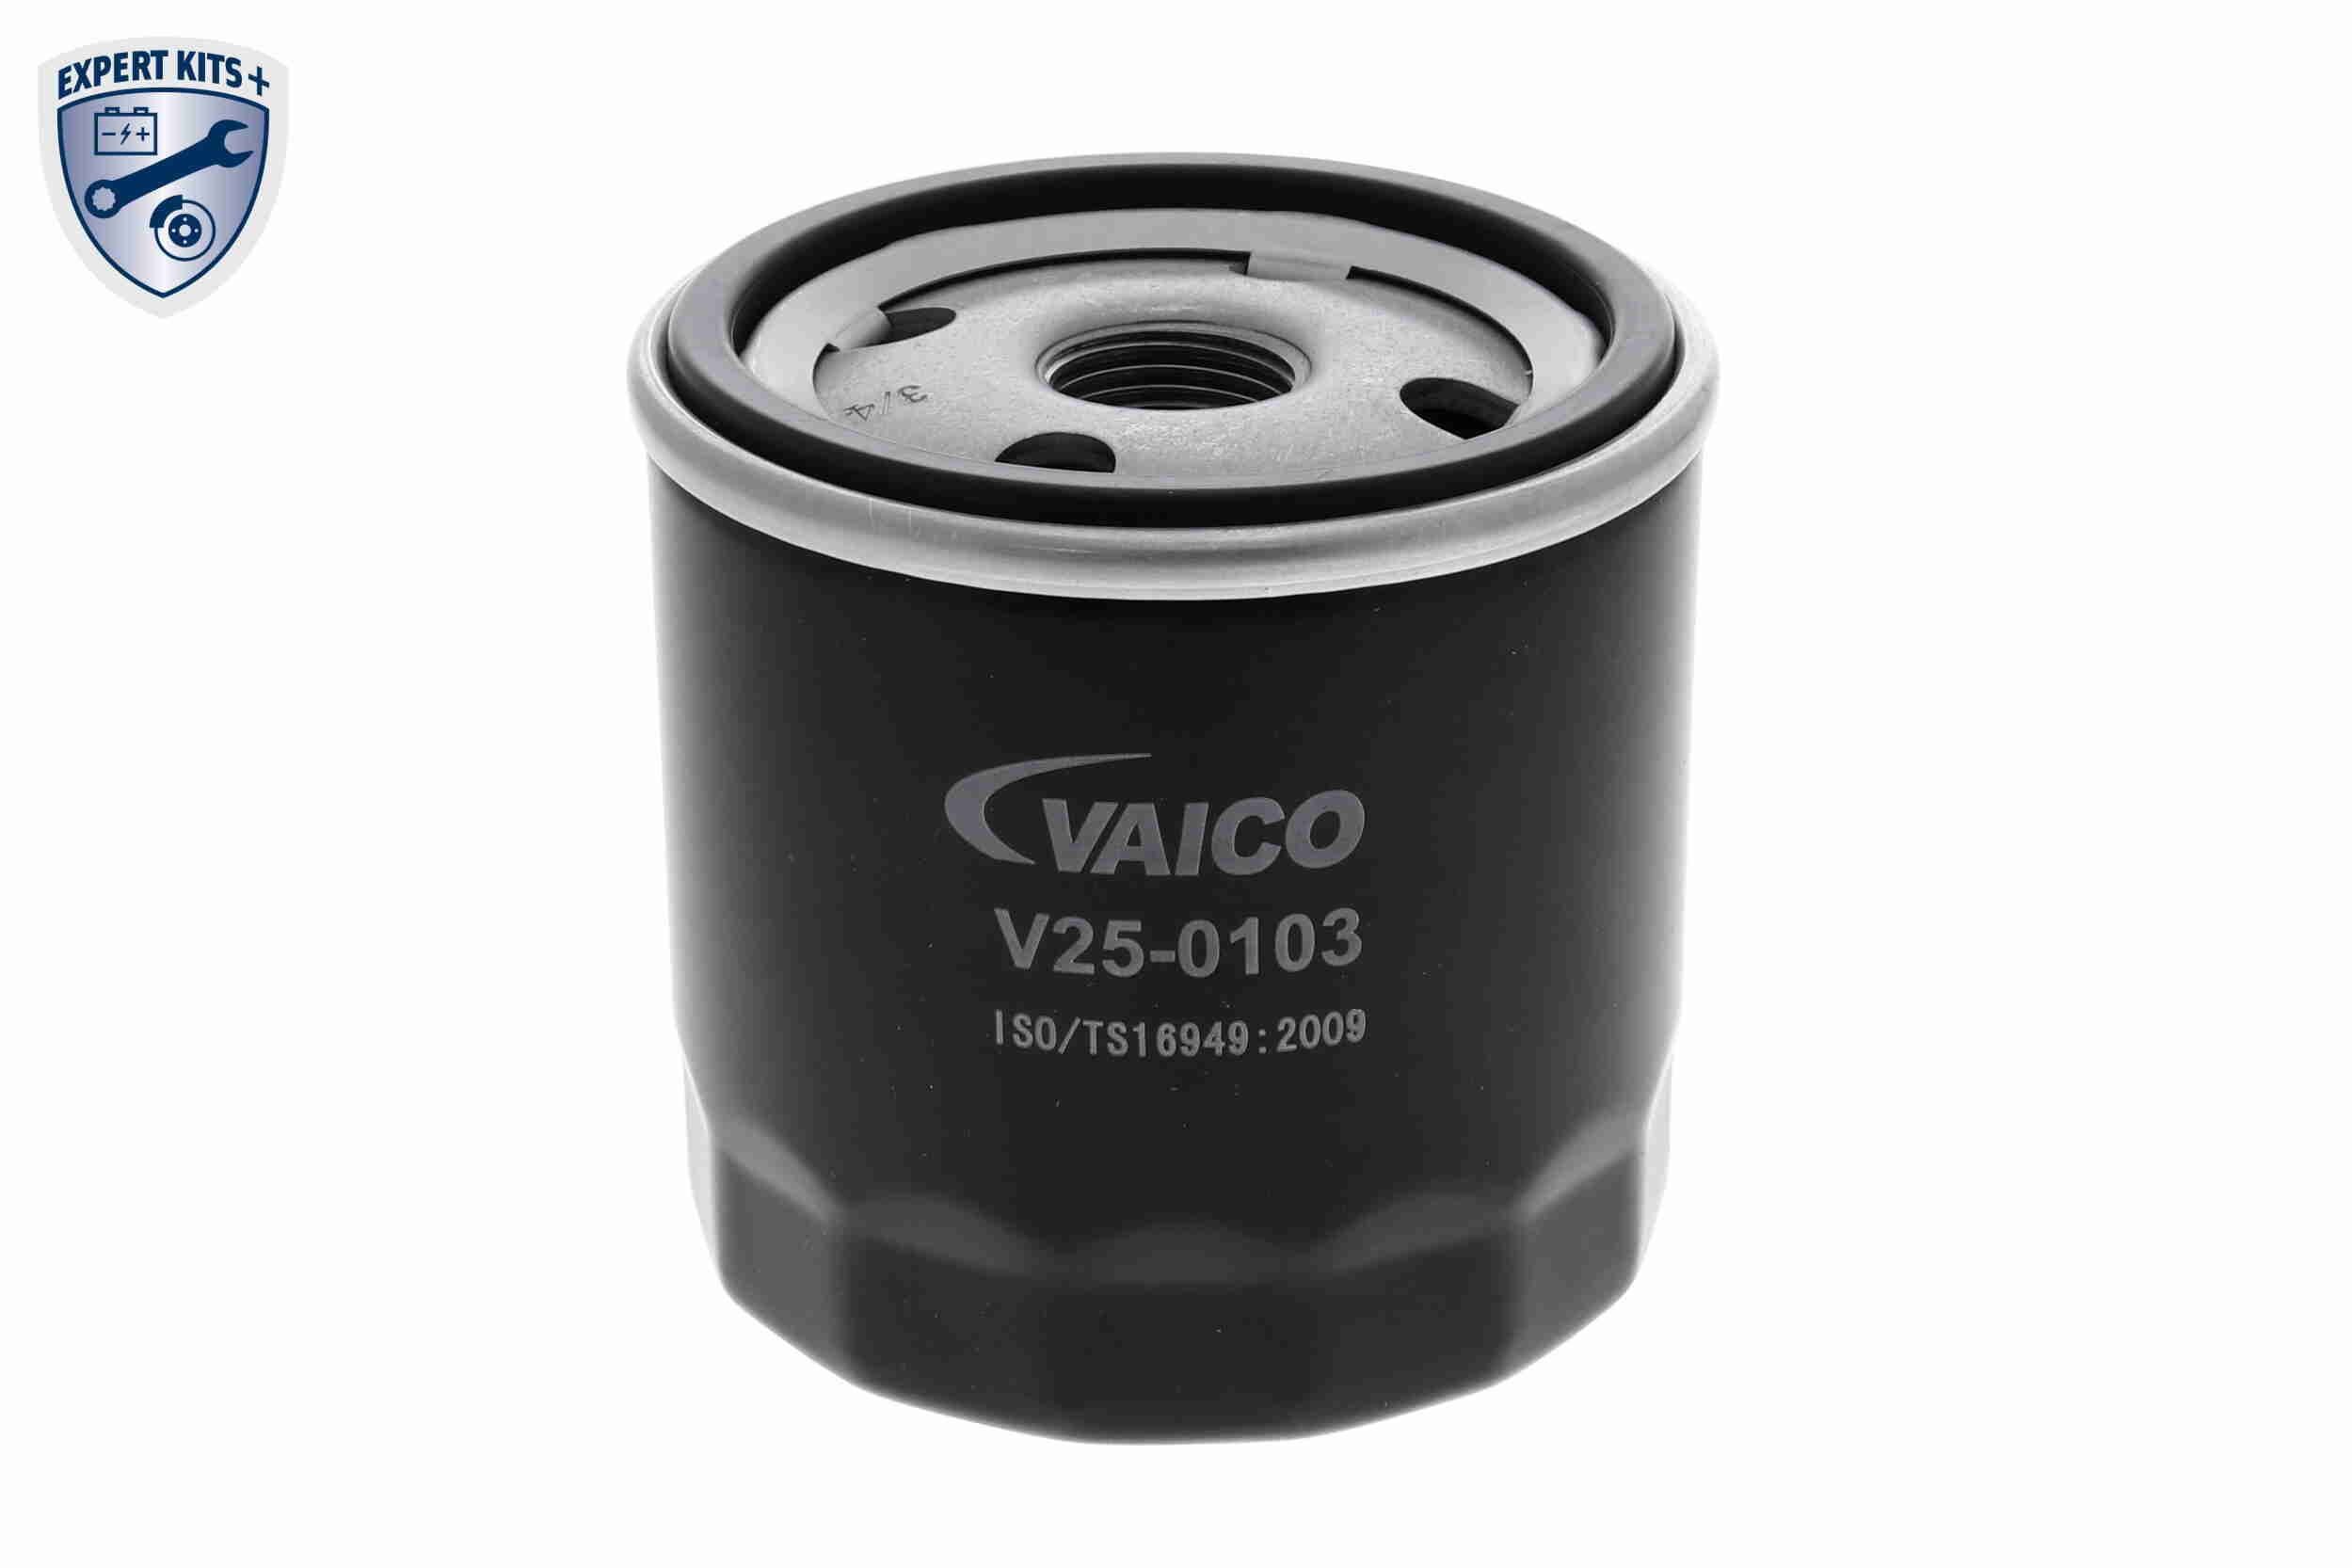 VAICO Motorölfilter V25-0103 3/4-16 UNF, Original VAICO Qualität, mit einem Rücklaufsperrventil, Anschraubfilter Innendurchmesser 2: 62mm, Innendurchmesser 2: 71mm, Ø: 76mm, Ø: 76mm, Höhe: 74mm